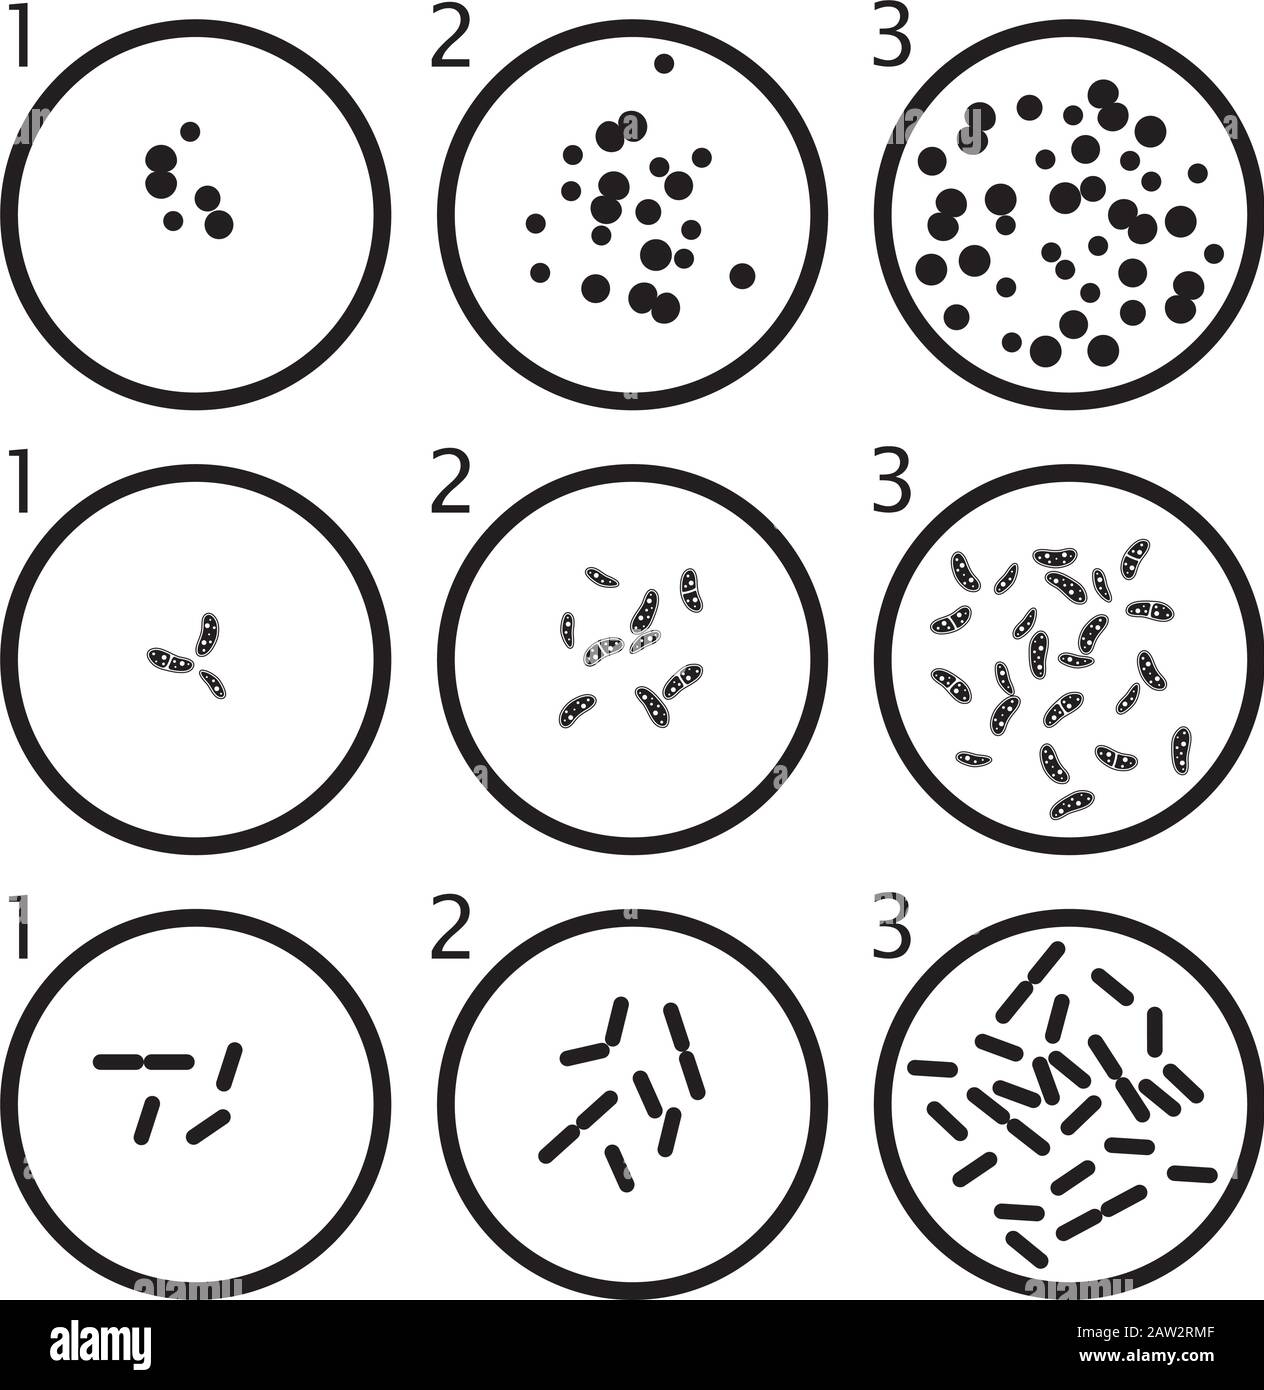 fase di crescita dei batteri vettoriali. cellule batteriche nere in piastre petri isolate su fondo bianco Illustrazione Vettoriale